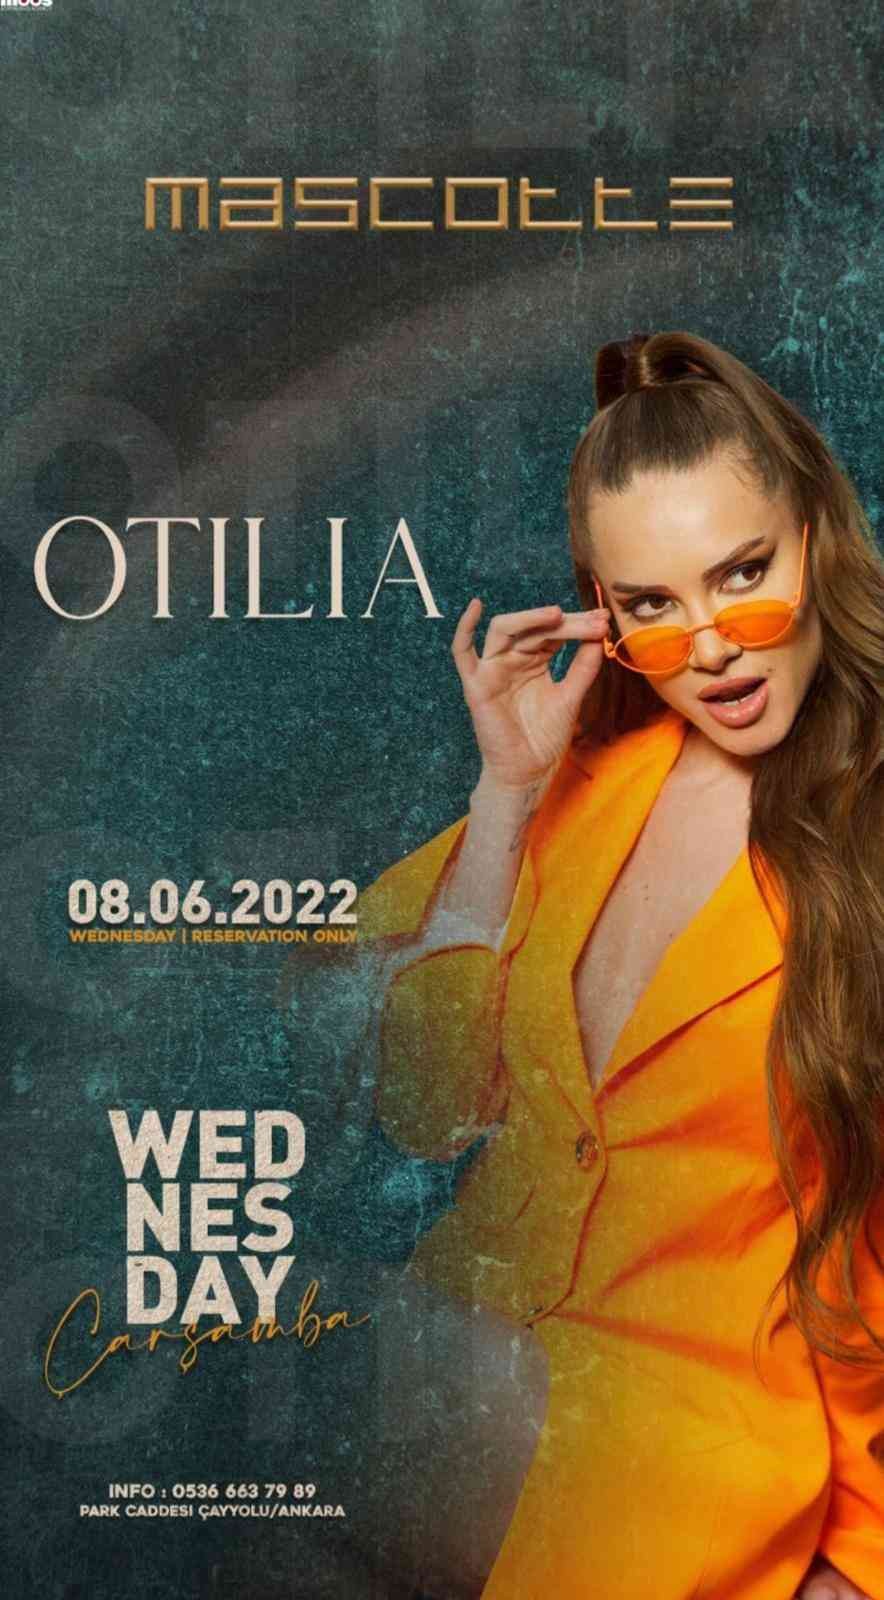 KOCAELİ (İHA) – ’Bilionera’ isimli şarkısıyla 170 milyon izlenmeyi gören, Dünyaca ünlü şarkıcı Otilia, hayranları ile Türkiye’de buluşacak ...